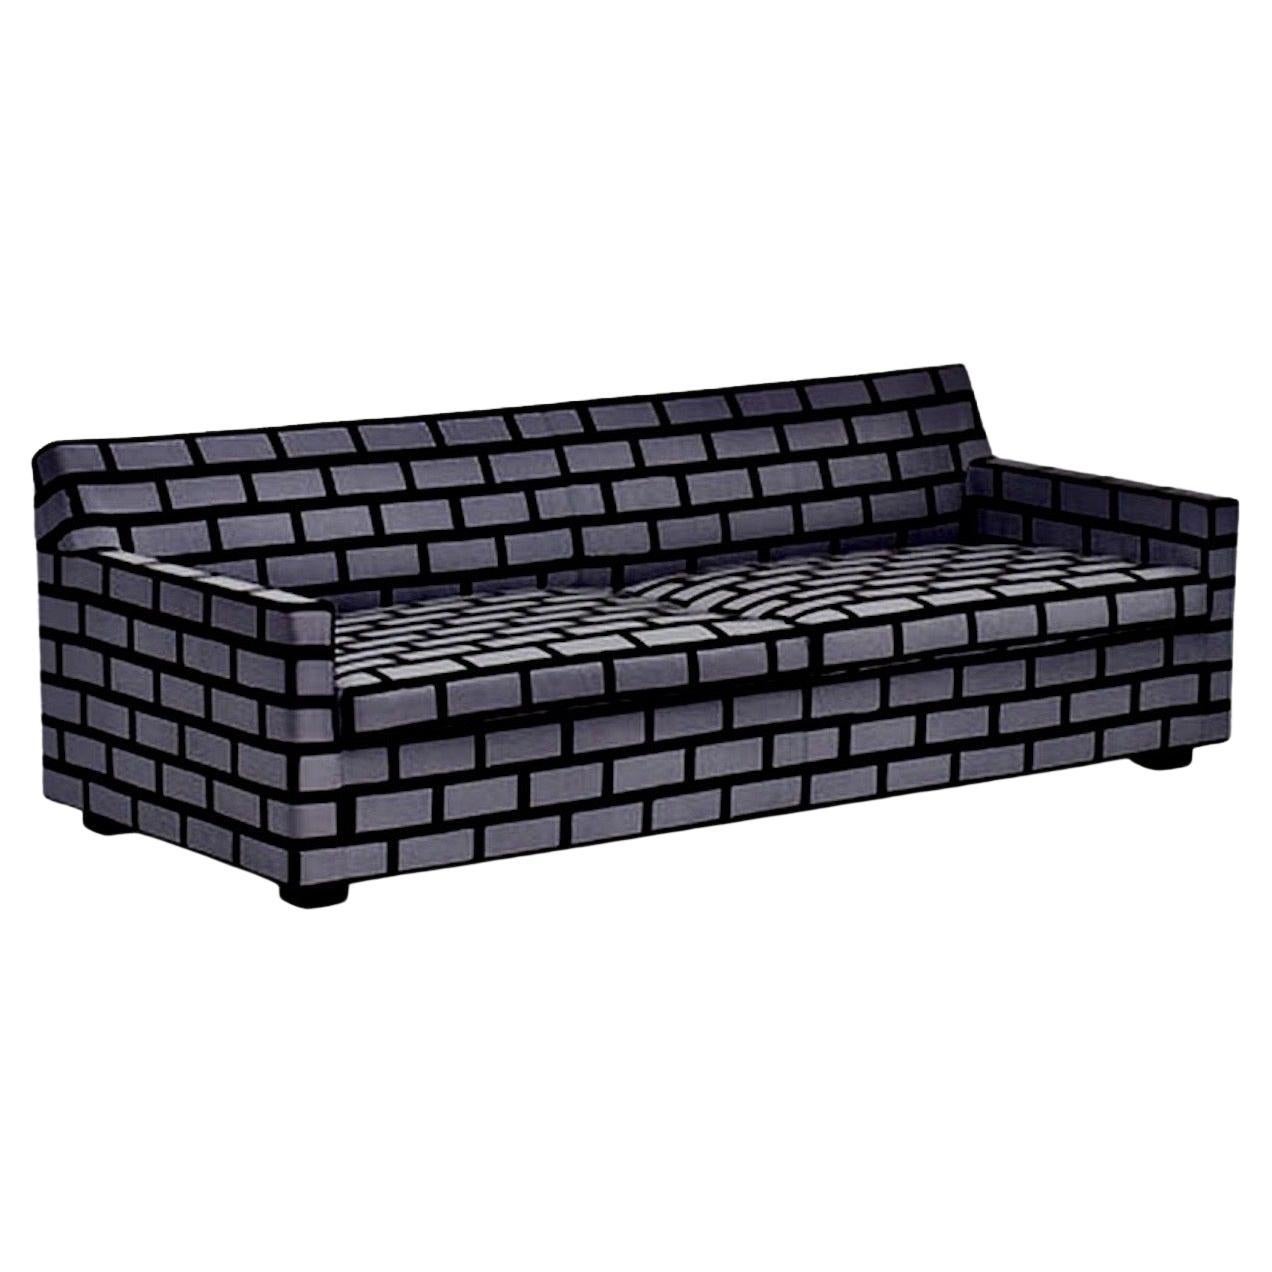 Gray Brick & Mortar Sofa, Rich Woods & Seb Wrong, Established & Sons, Großbritannien, 2009. Ikonisches postmodernes Design. Produziert für einen kurzen Zeitraum in den Jahren 2009-2010. Hergestellt in England.
Maße: 27 H × 80 B × 38 T in.  Ziegel &